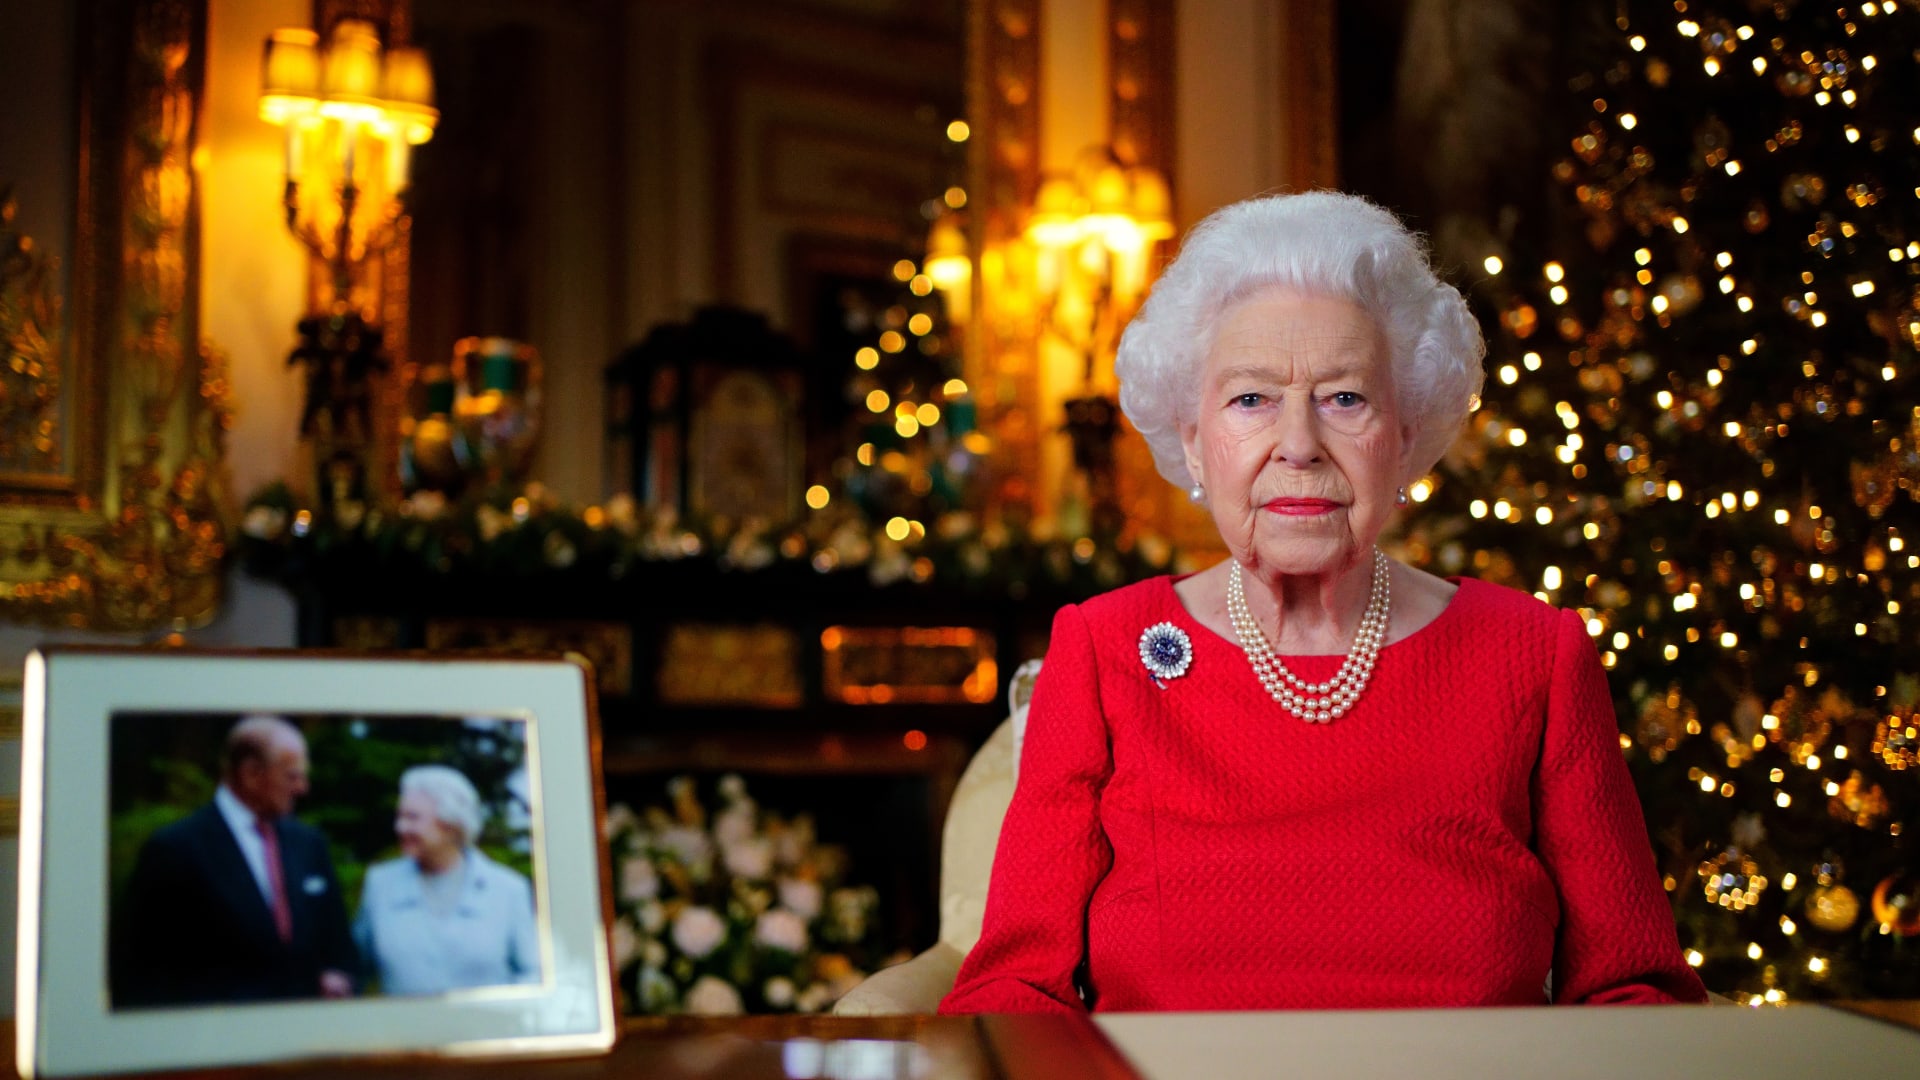 ملكة بريطانيا إليزابيث الثانية تتذكر زوجها الأمير فيليب في رسالة عيد الميلاد